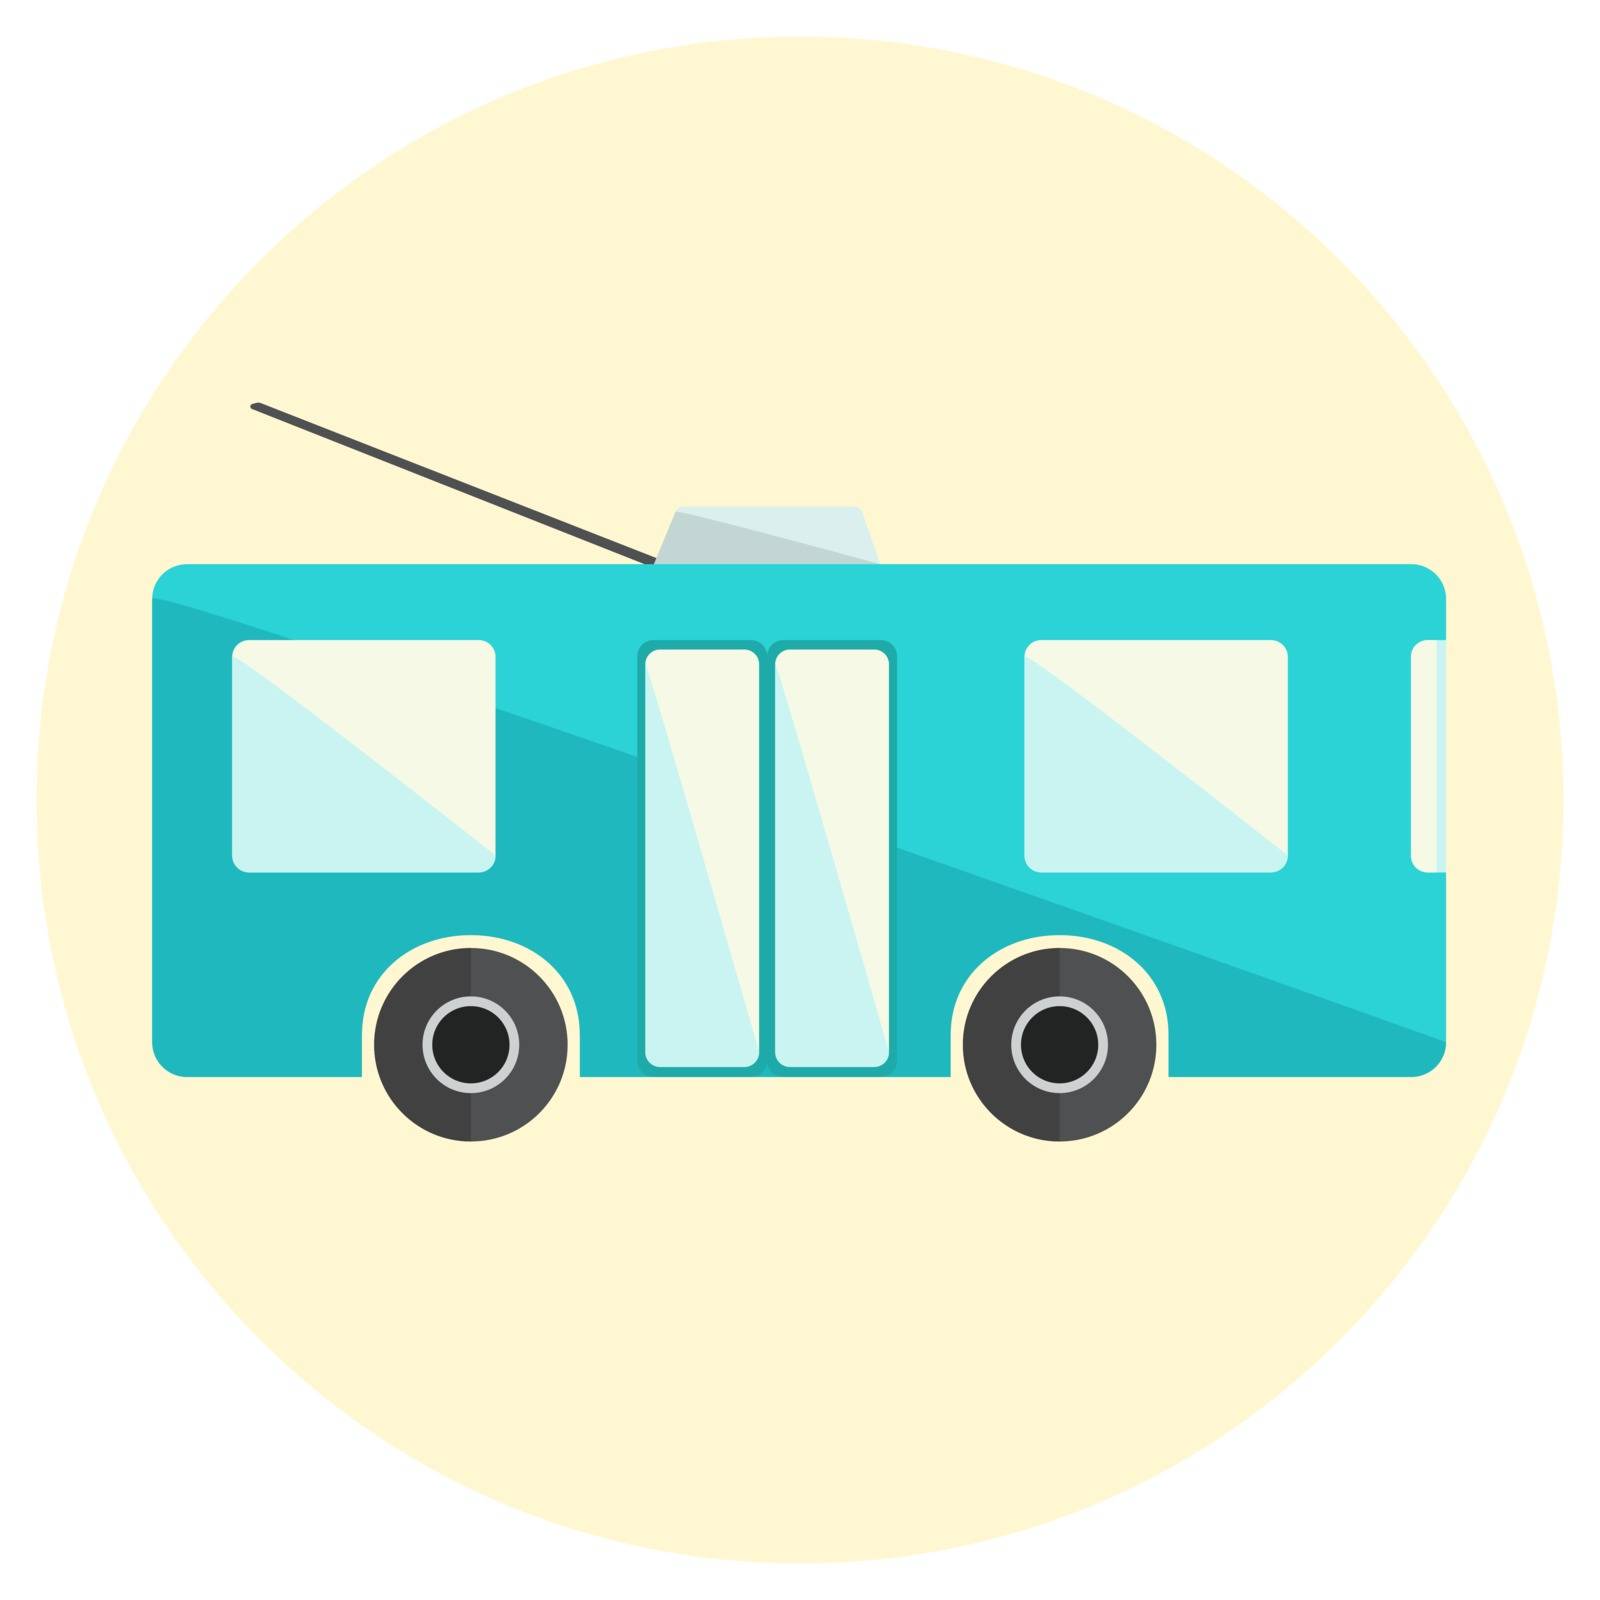 Cute little flat trolley bus icon, bright blue trolleybus icon